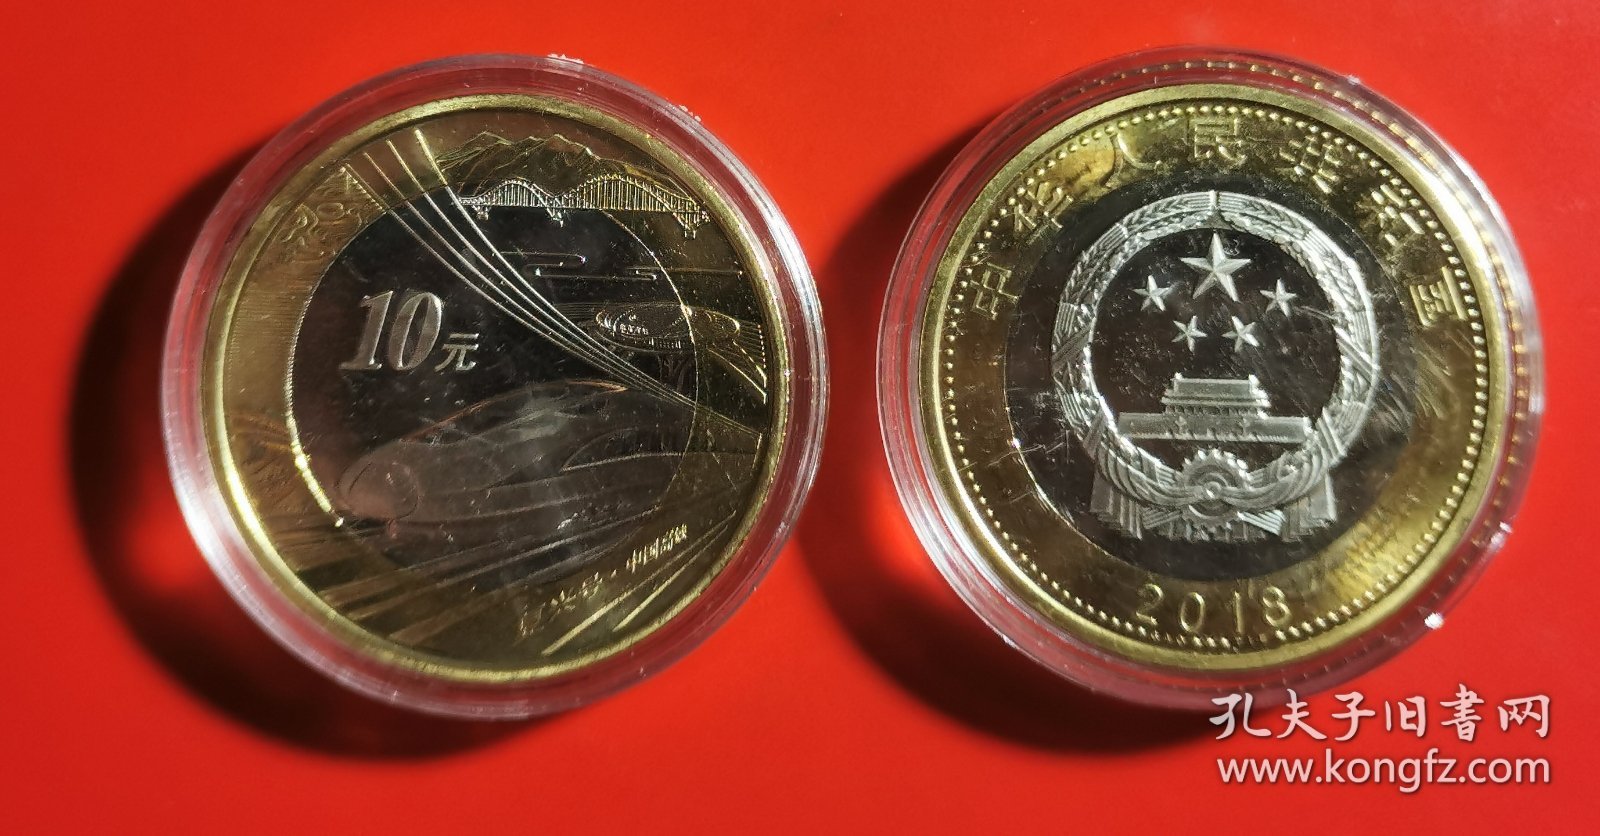 2018年《高铁复兴号》纪念币(面值10元)